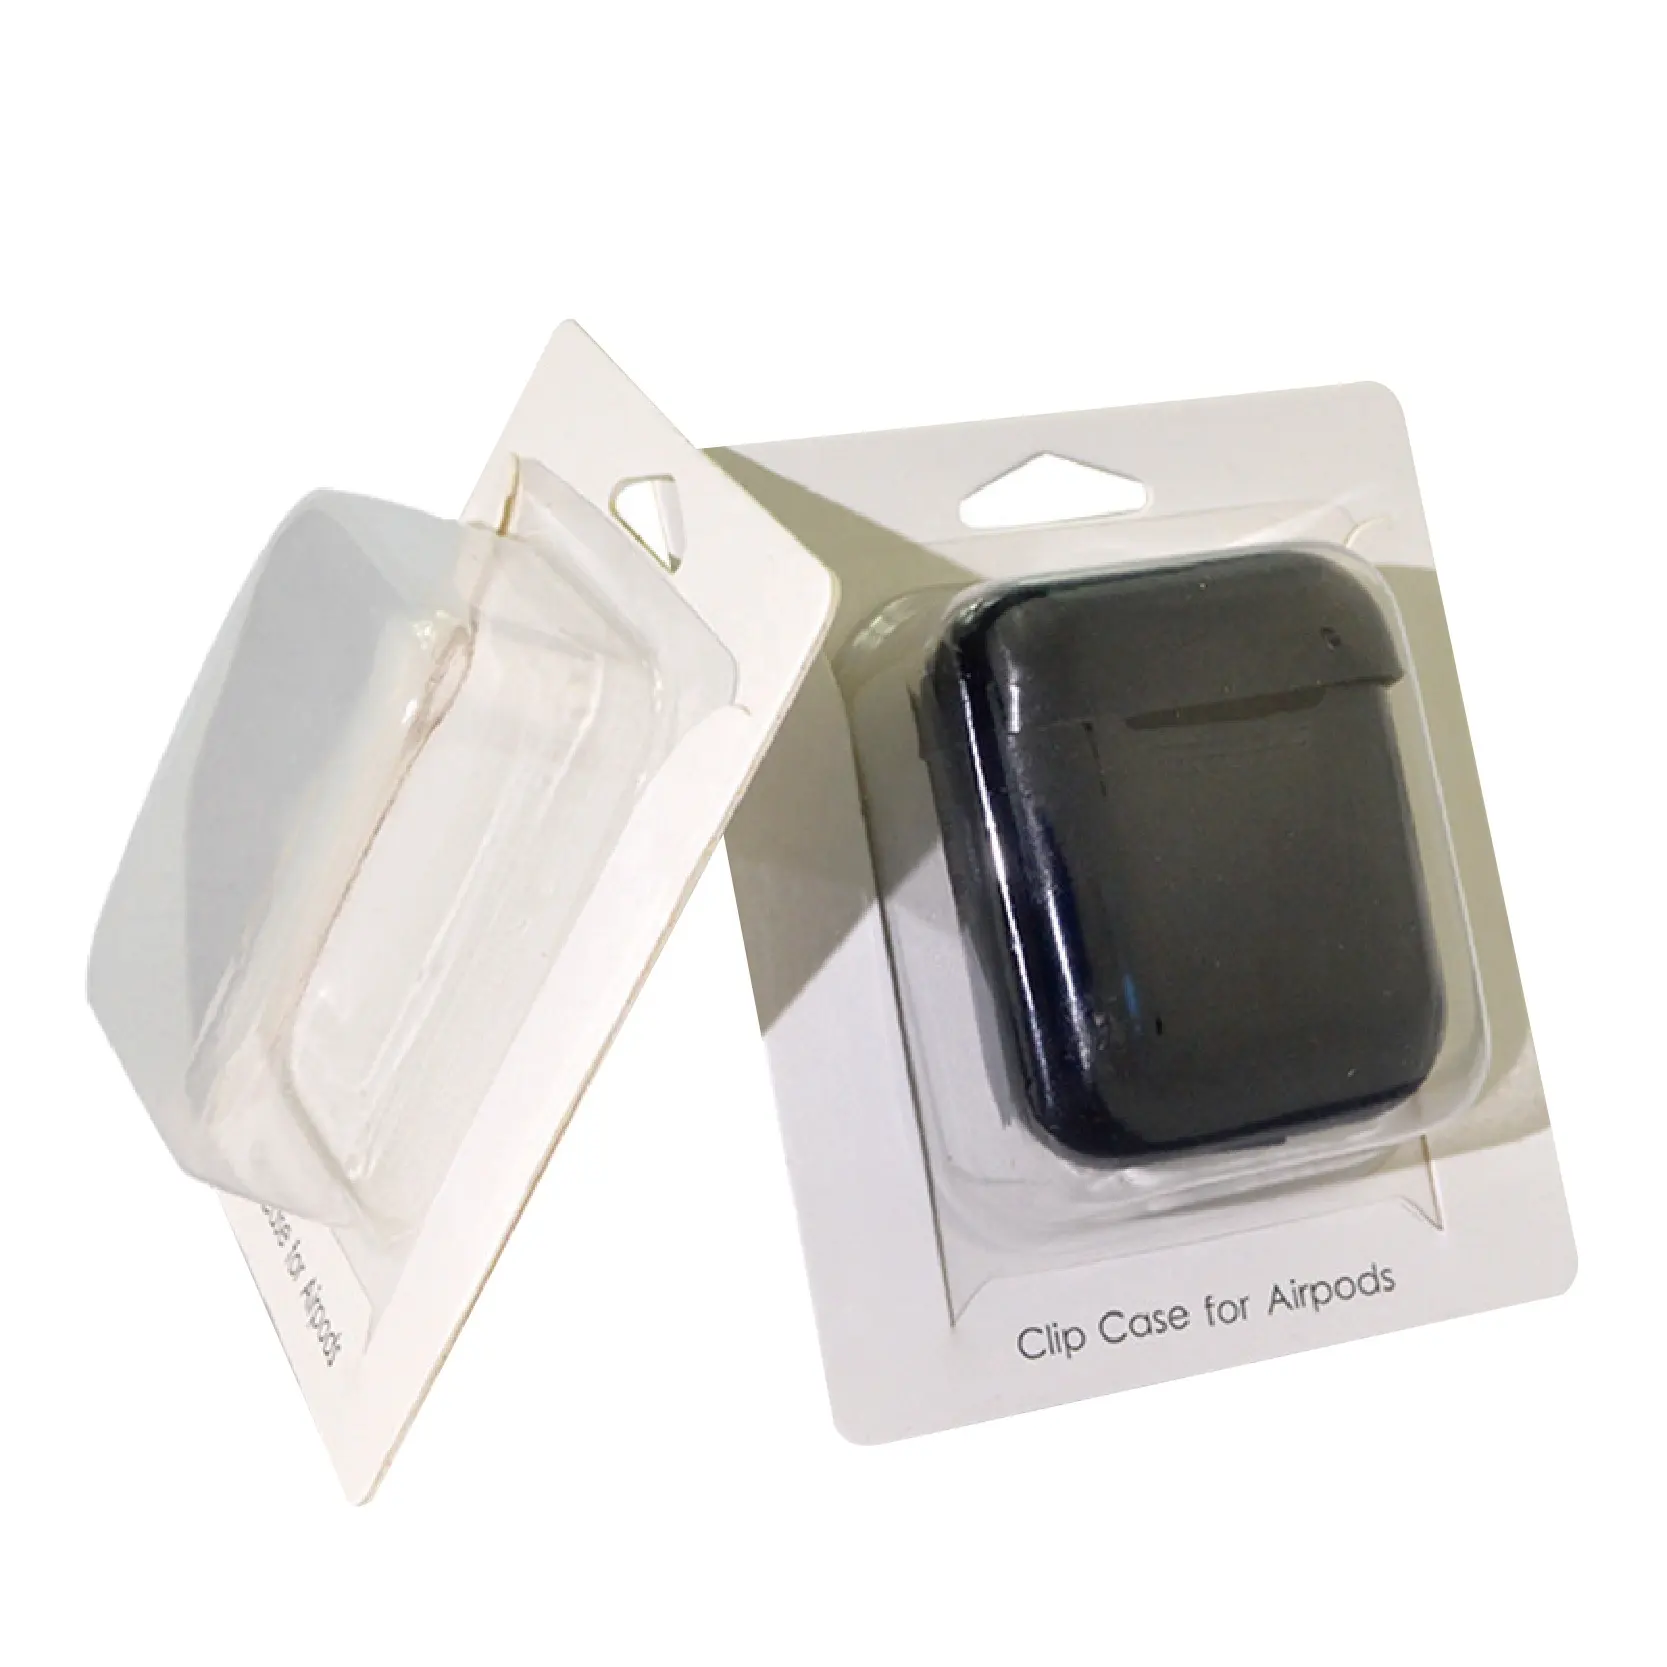 Embalagem de caixa de airpods da apple, impressão personalizada barata e fácil montagem